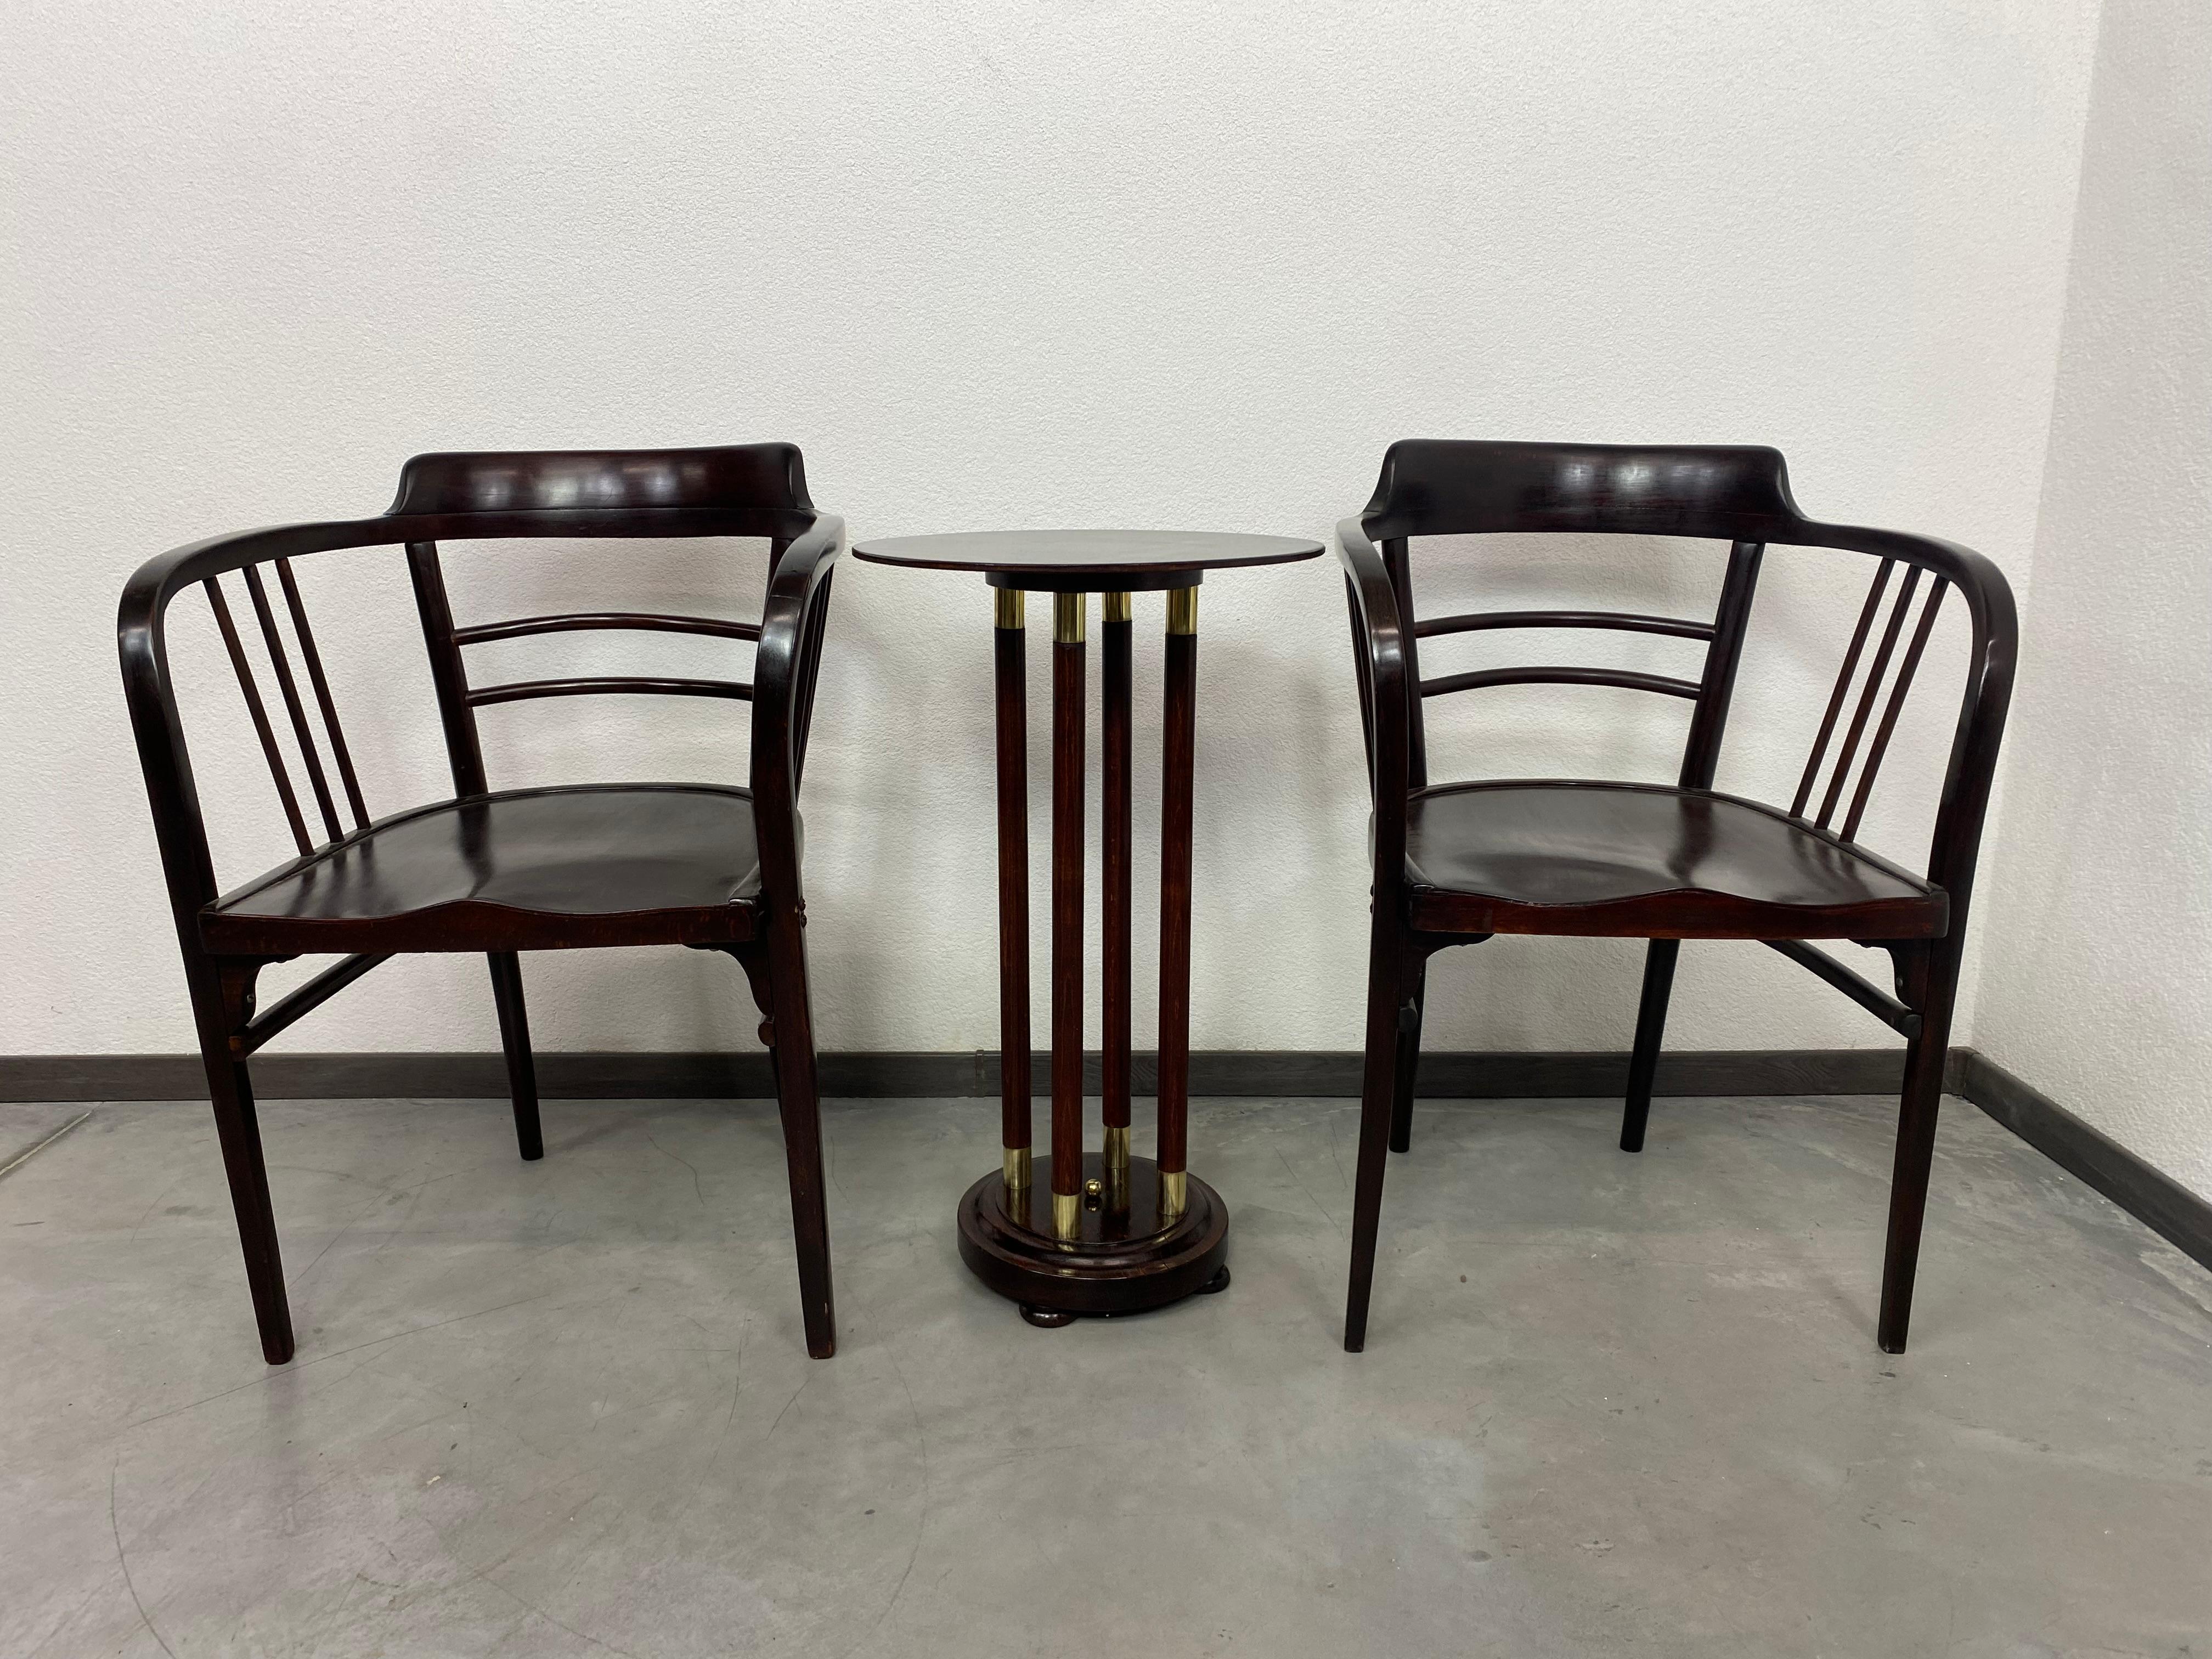 Bugholzsessel der Secession von Otto Wagner für Thonet. Die Sessel wurden in der Vergangenheit restauriert, müssen aber gestrafft werden, da sie ein wenig wackelig sind.